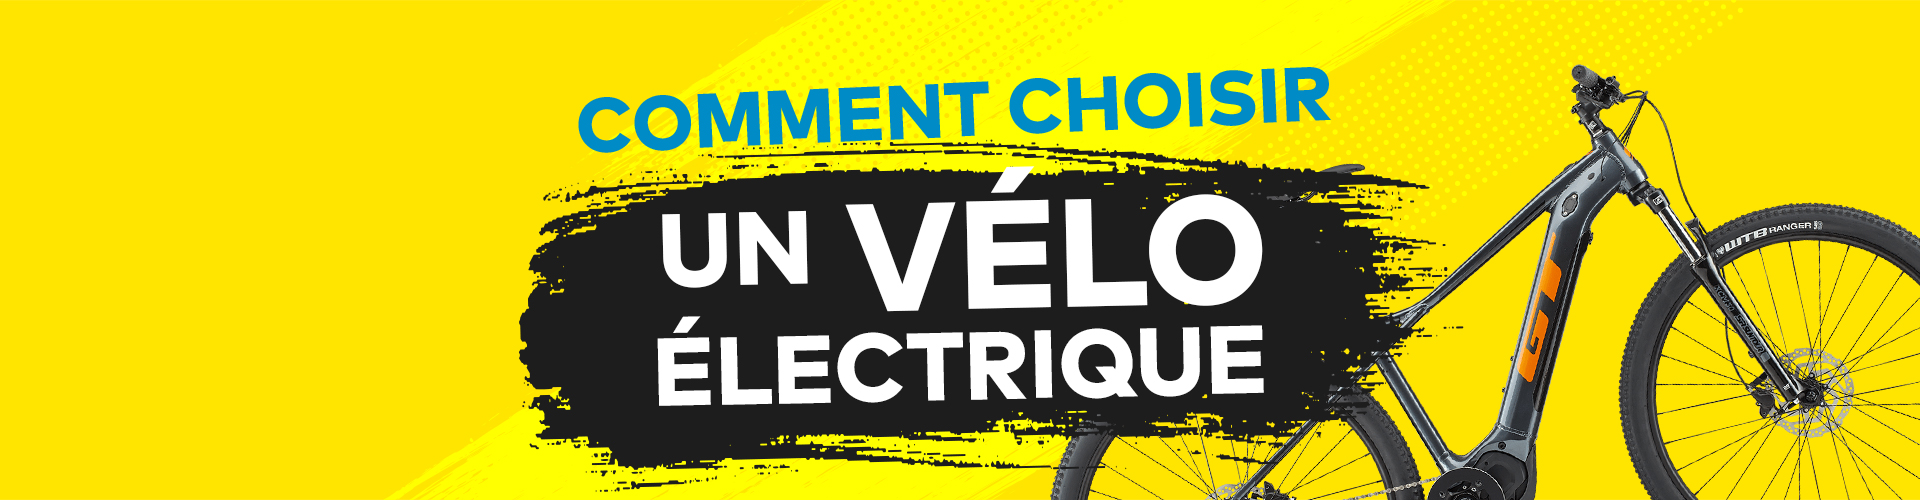 Comment choisir mon vélo électrique